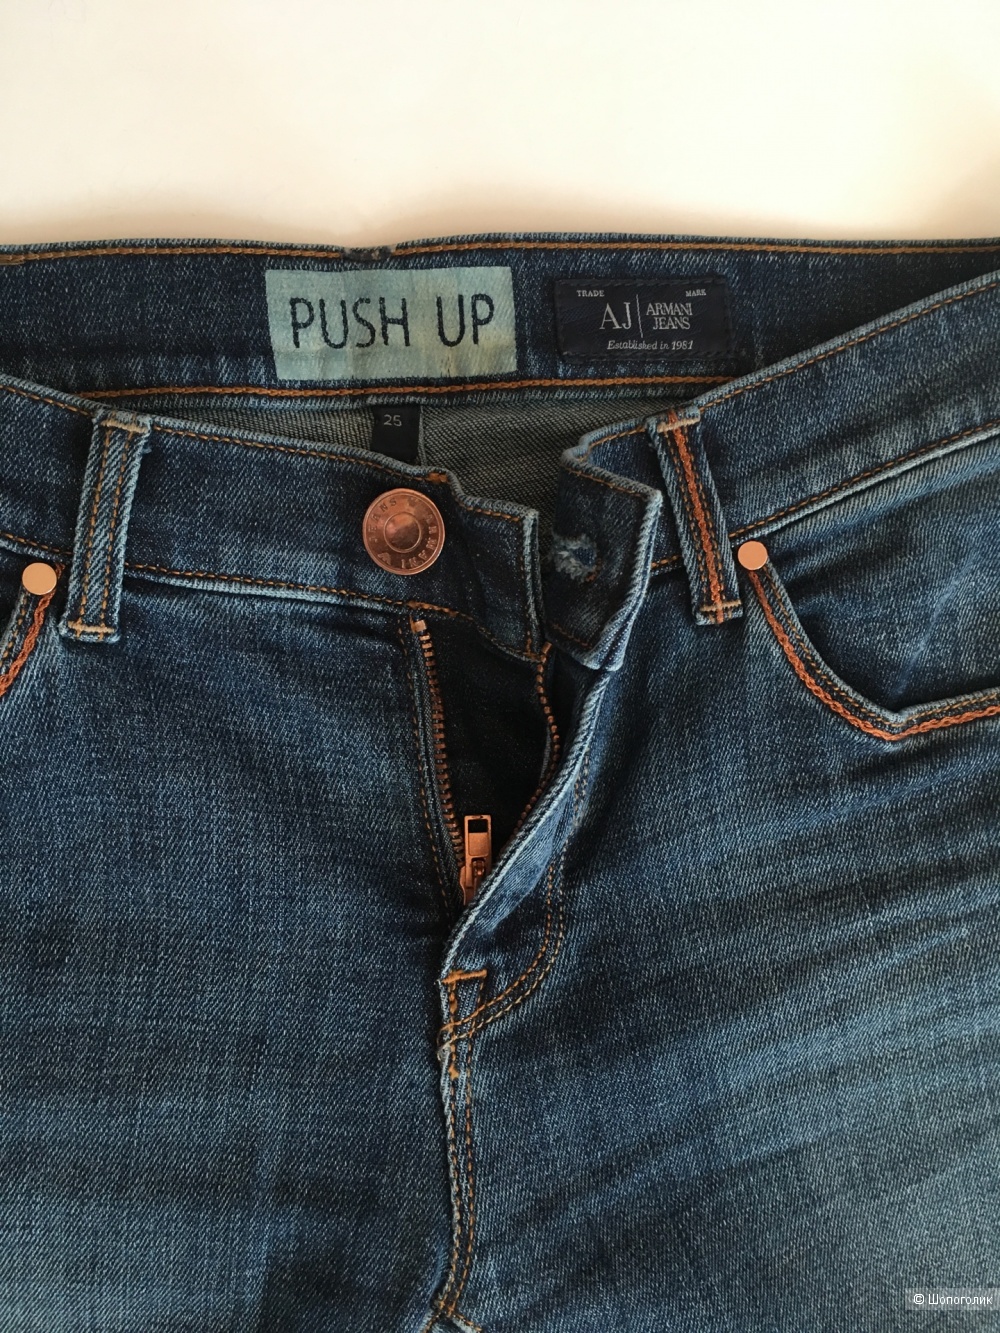 Джинсы Armani Jeans,  40, 42 размер